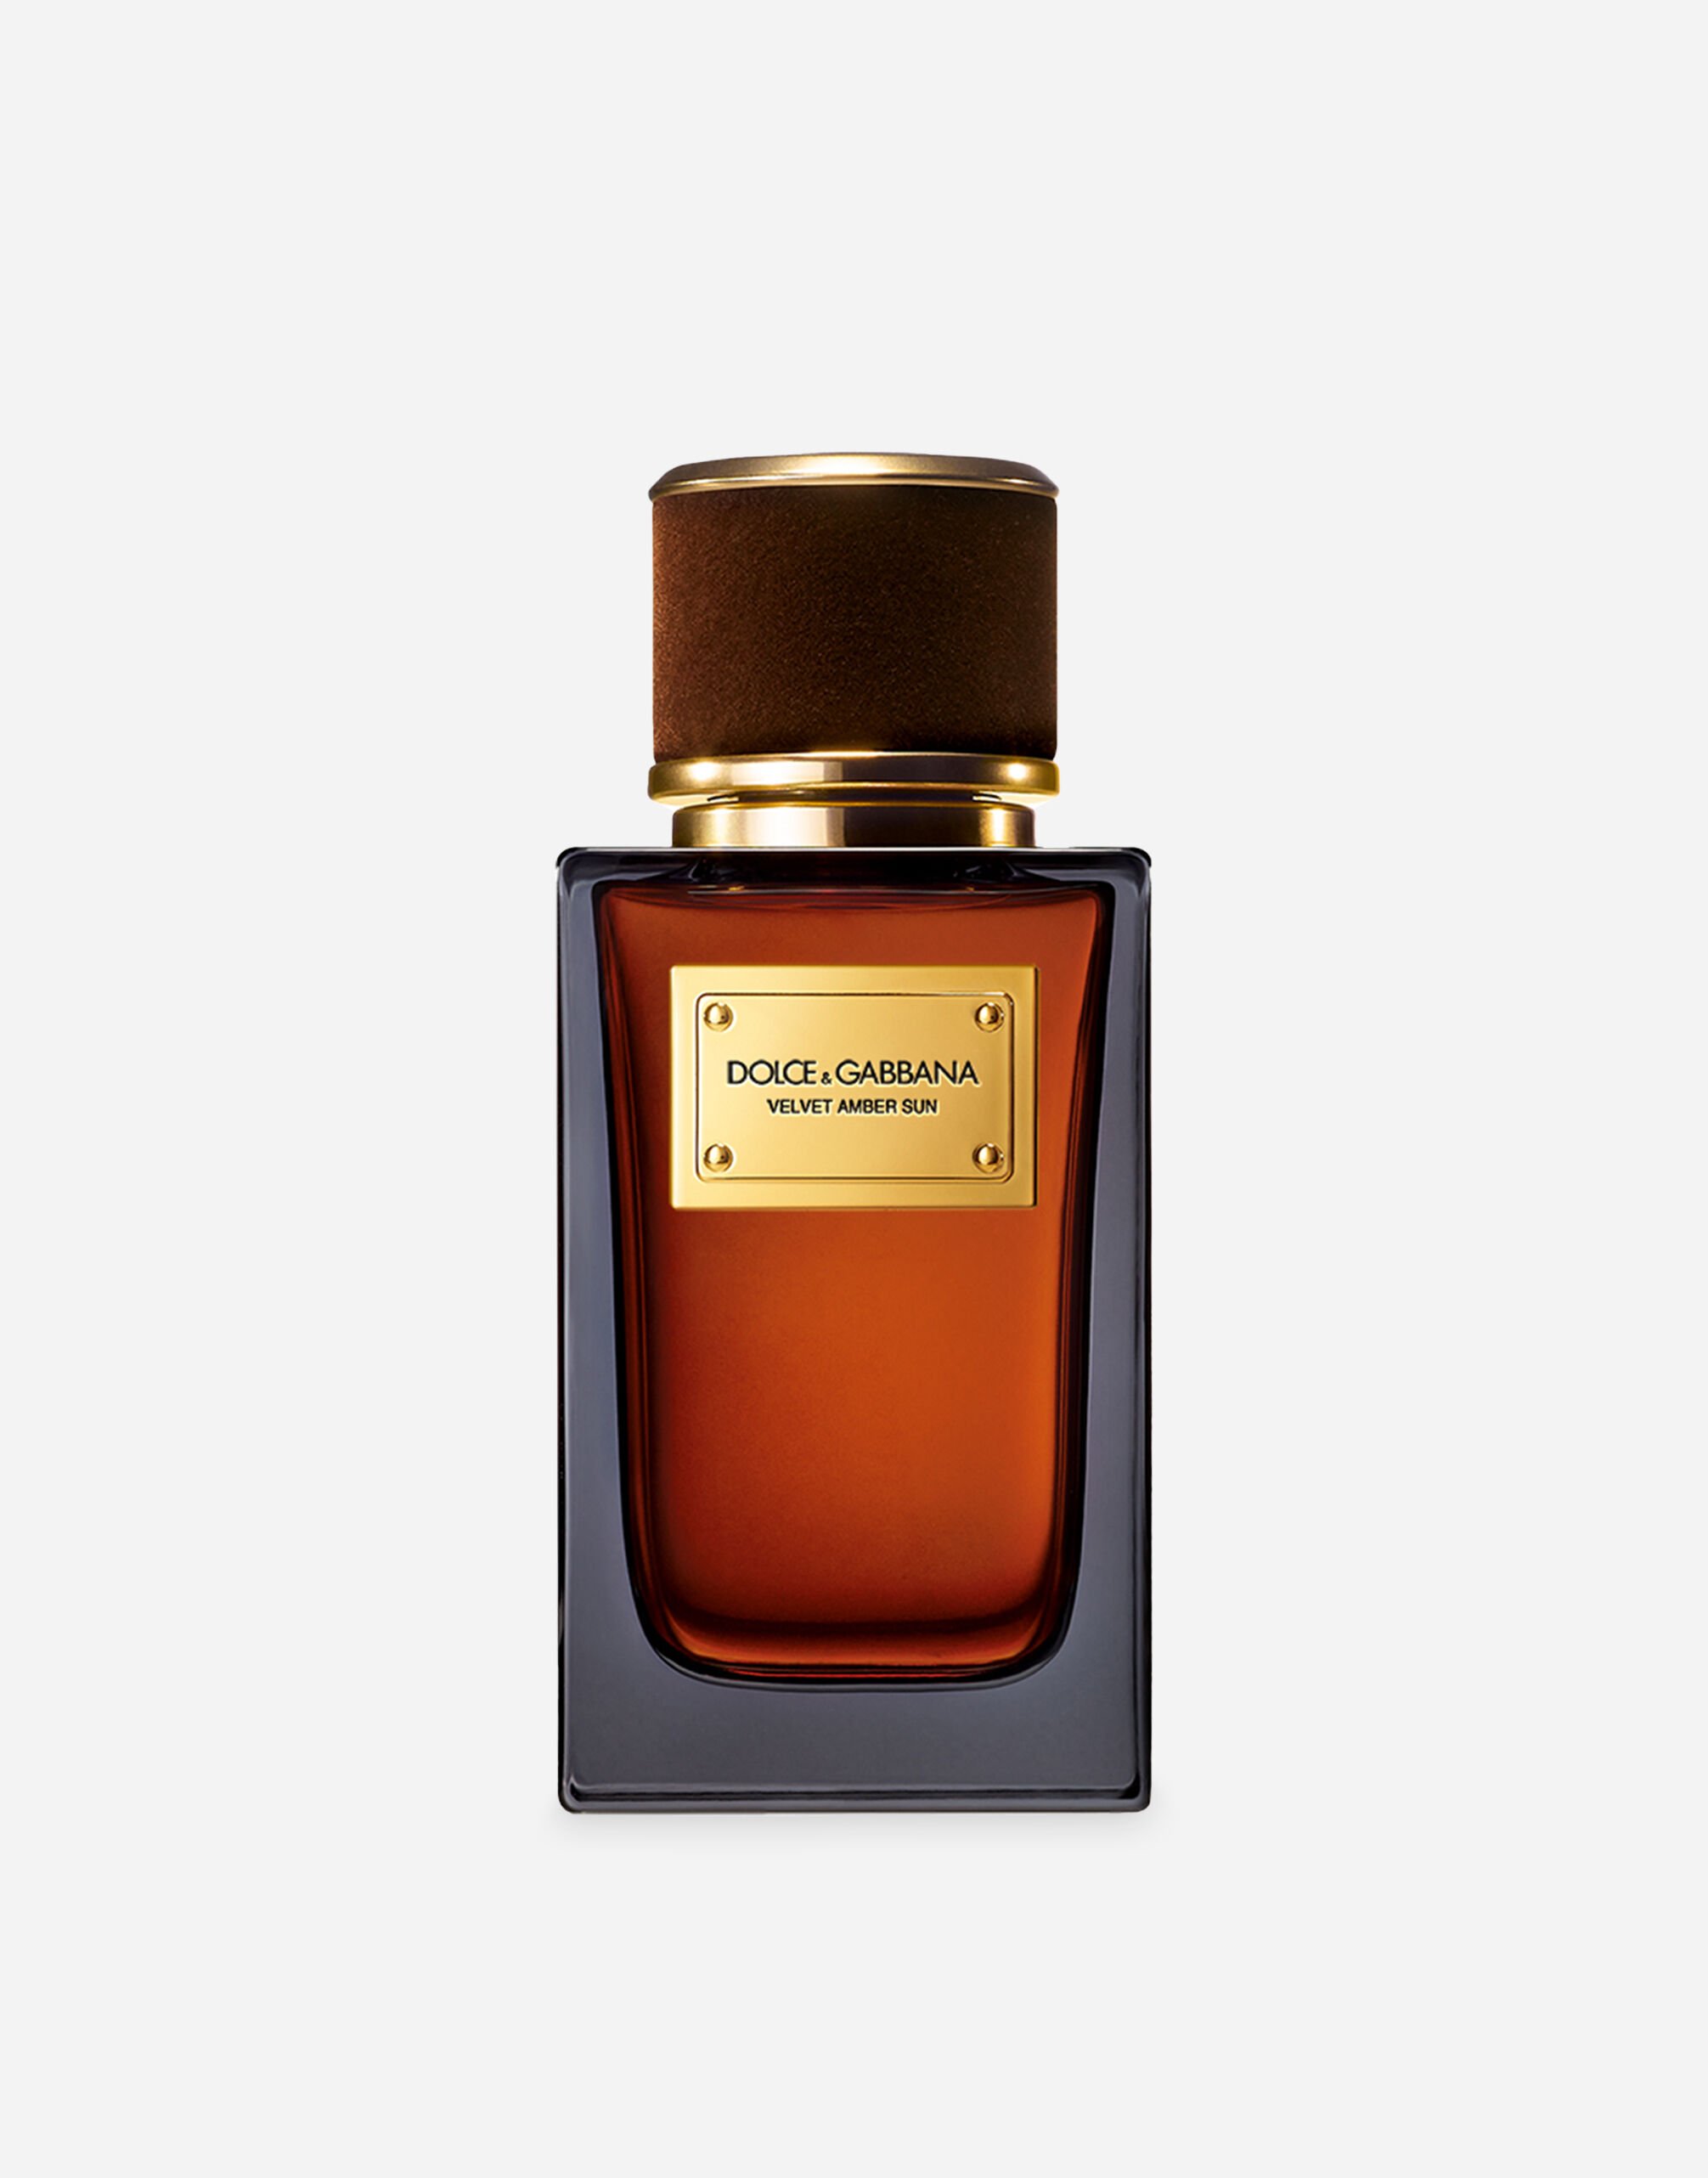 Dolce & Gabbana Velvet Amber Sun Eau de Parfum - VT0063VT000